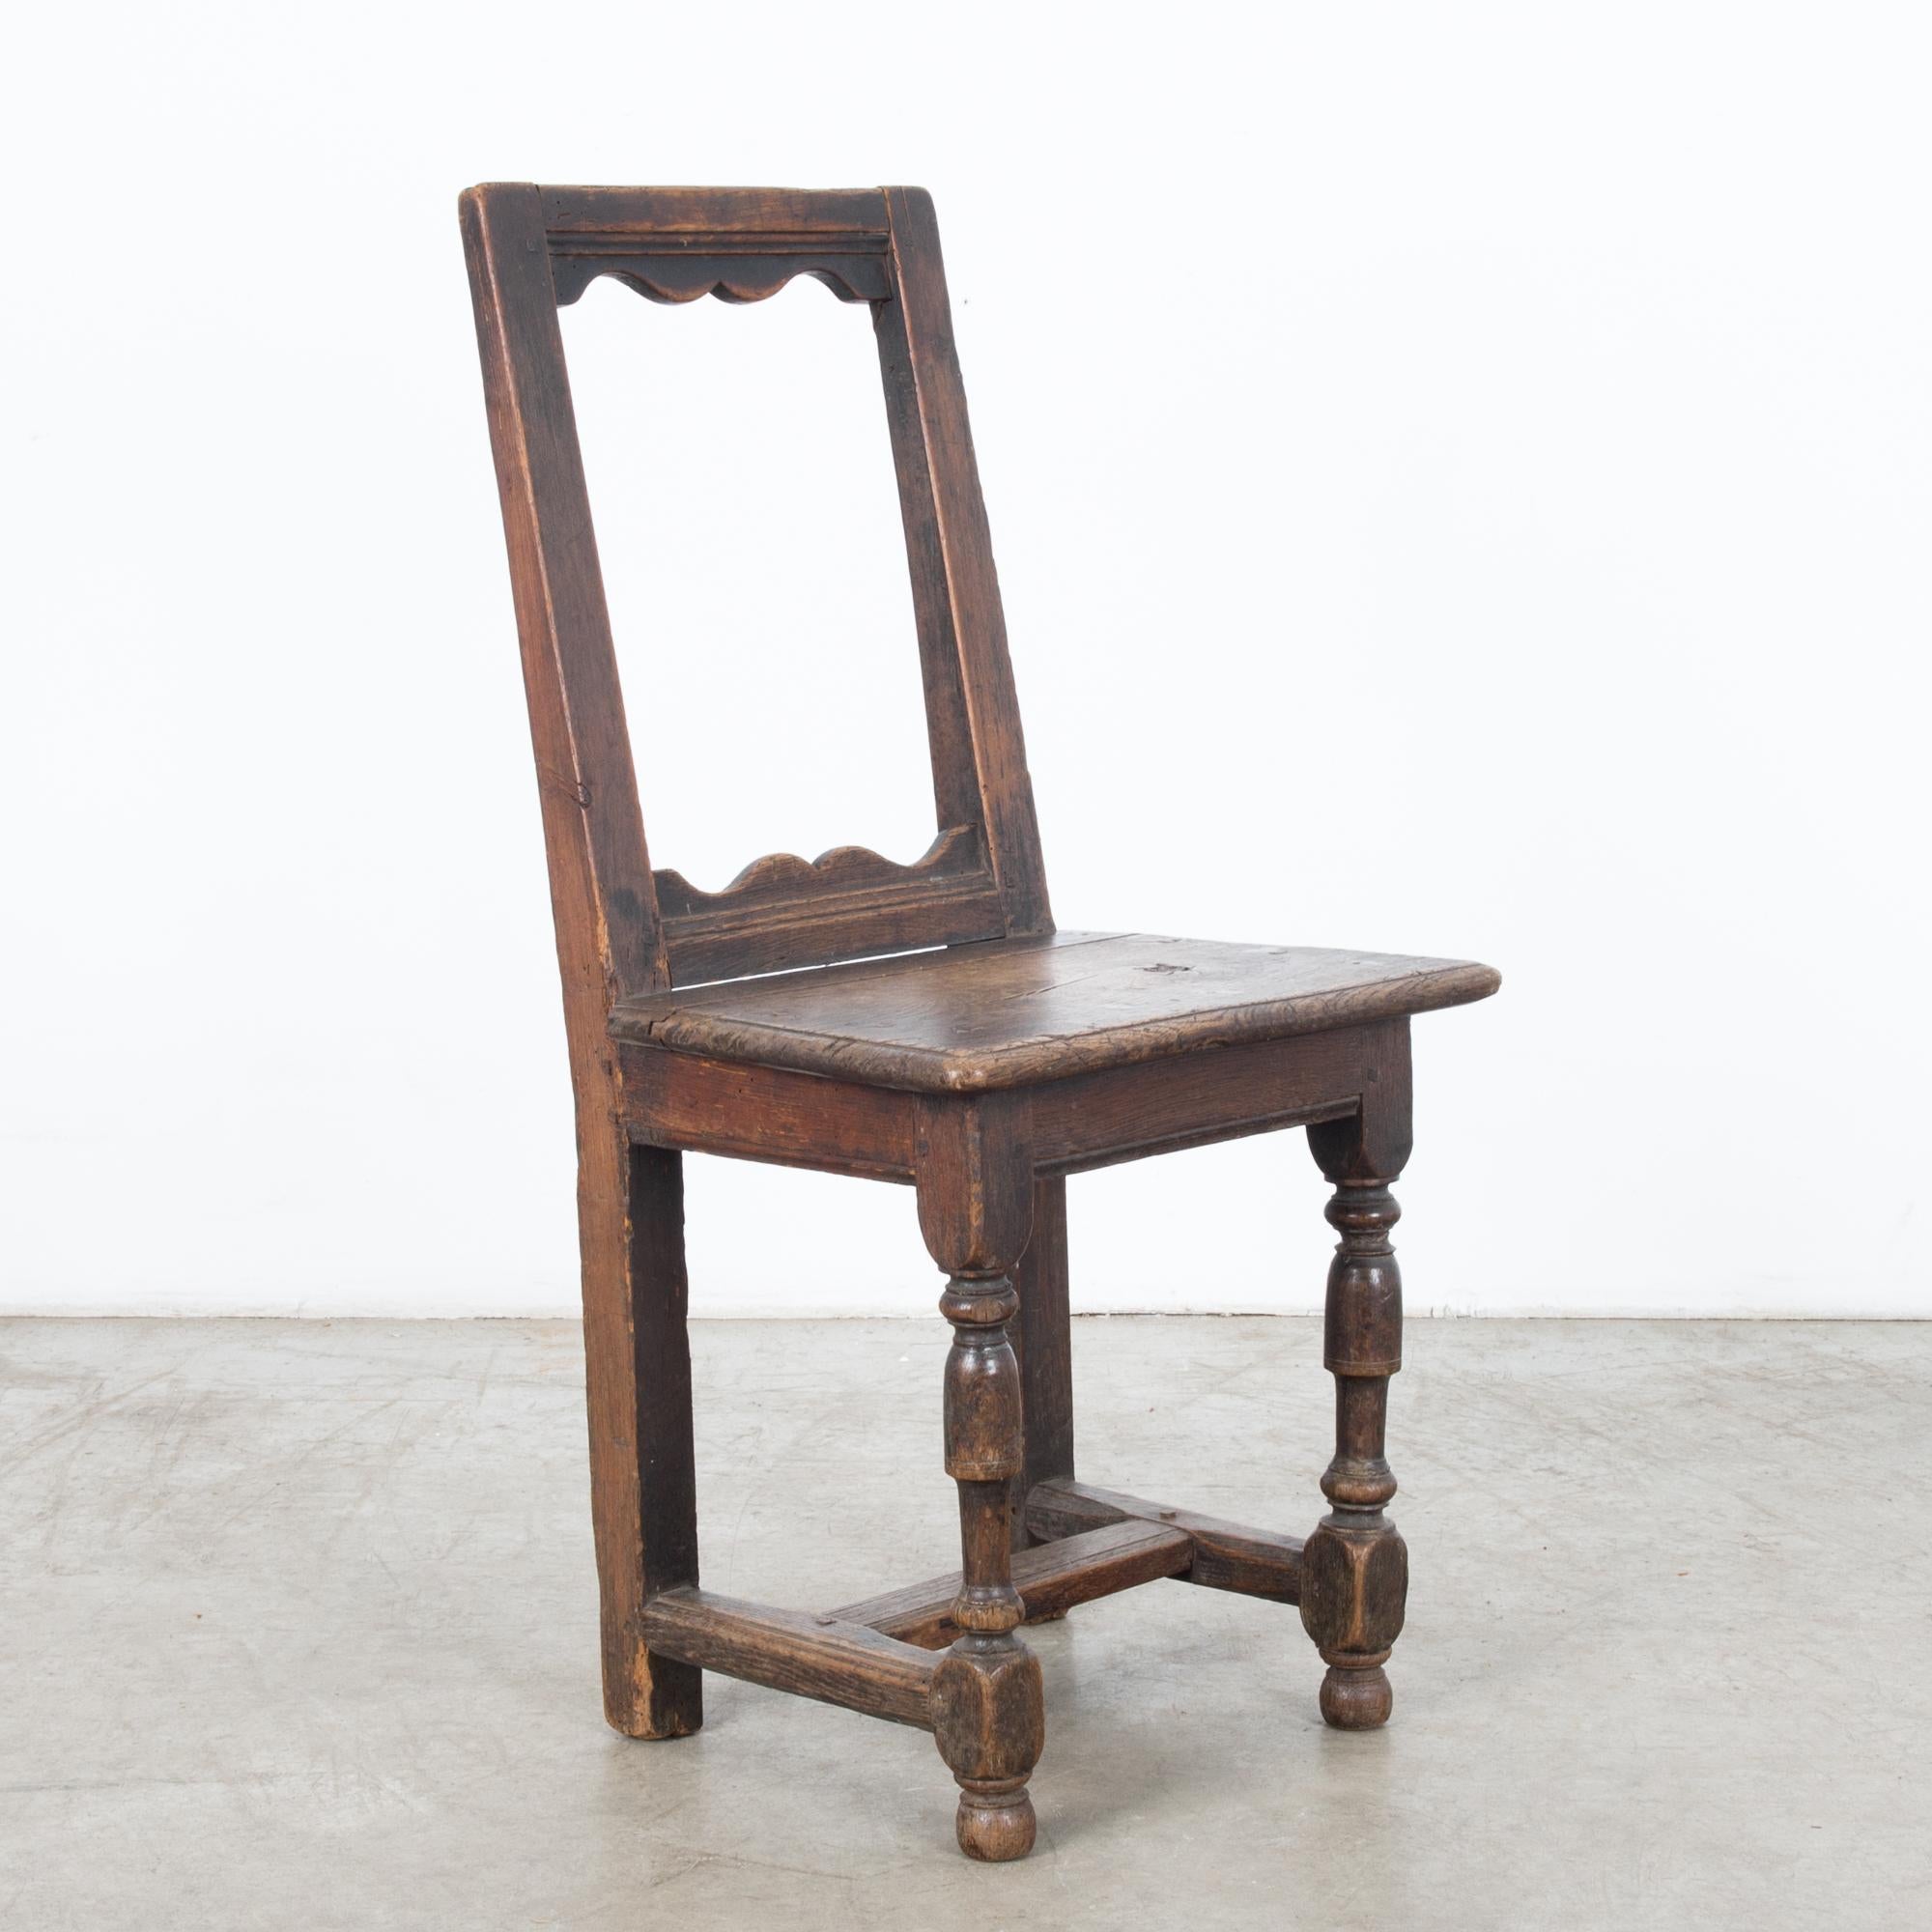 Ein Holzstuhl aus Belgien, um 1800. Eine aufrechte Form mit einer markanten, offen gerahmten Rückenlehne und einem quadratischen, getäfelten Sitz auf gedrechselten Beinen. Das dunkle, sanft polierte Holz ist zu einer Patina mit Licht- und